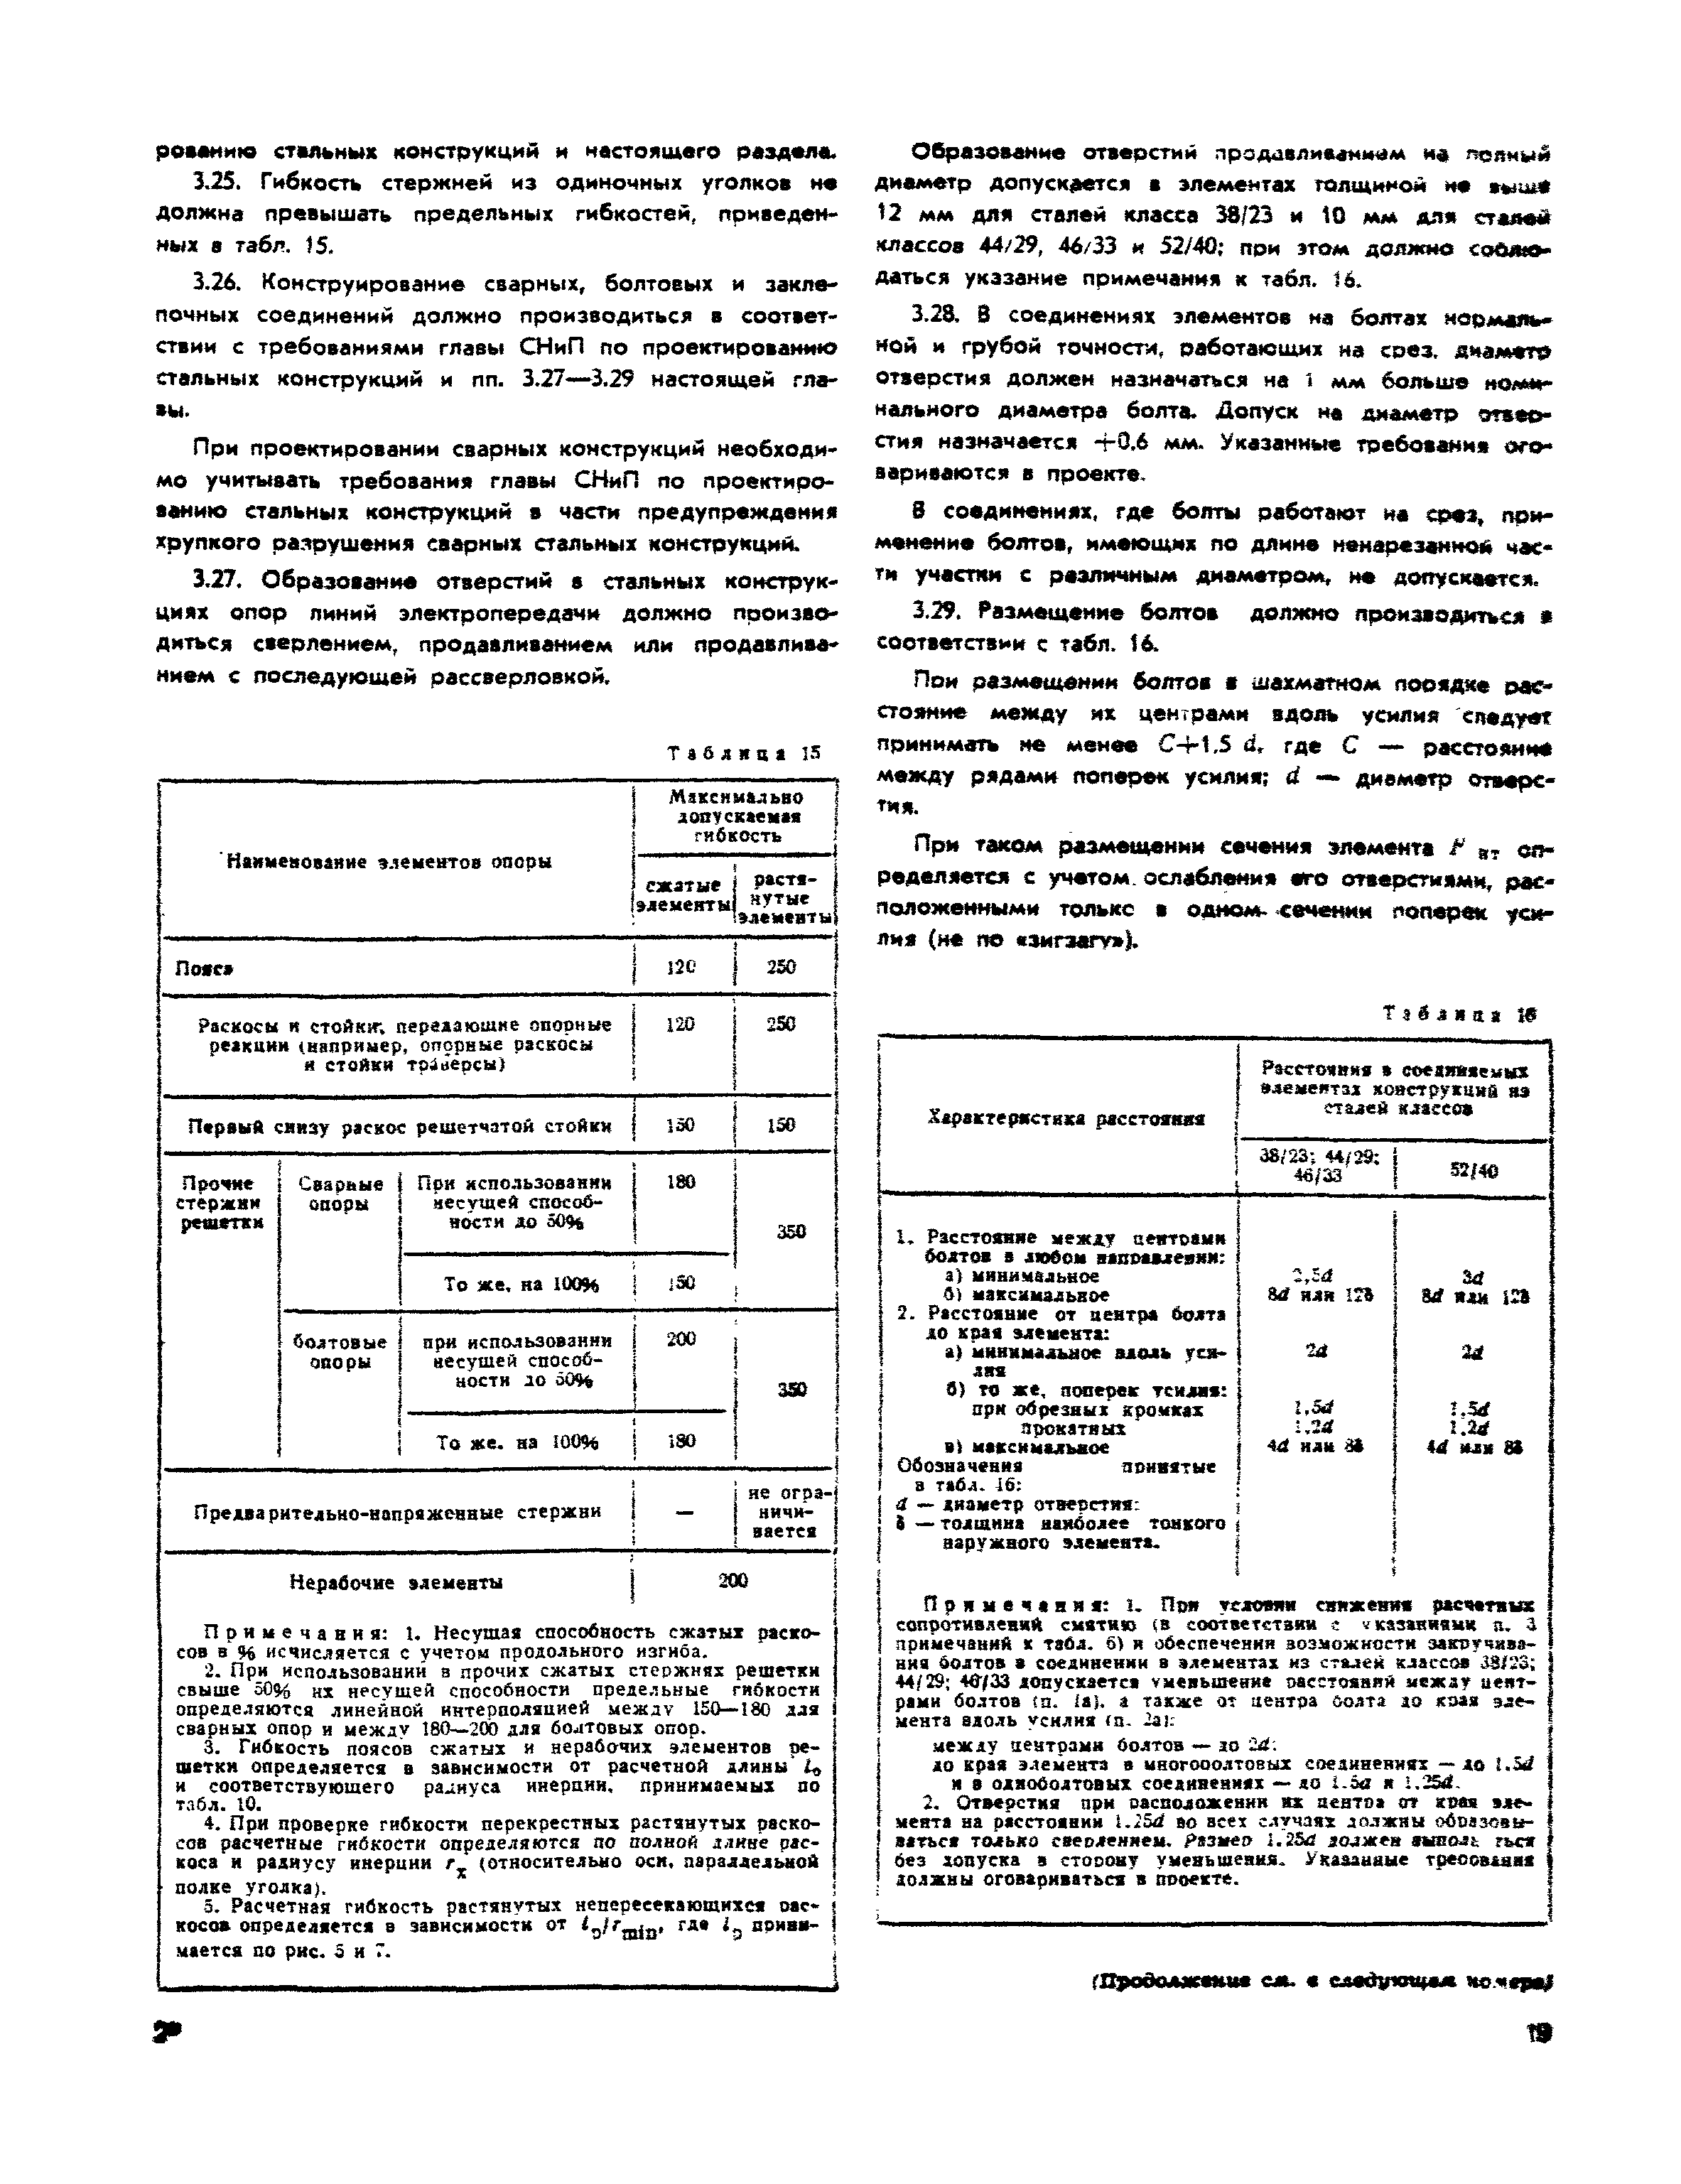 СНиП II-И.9-62